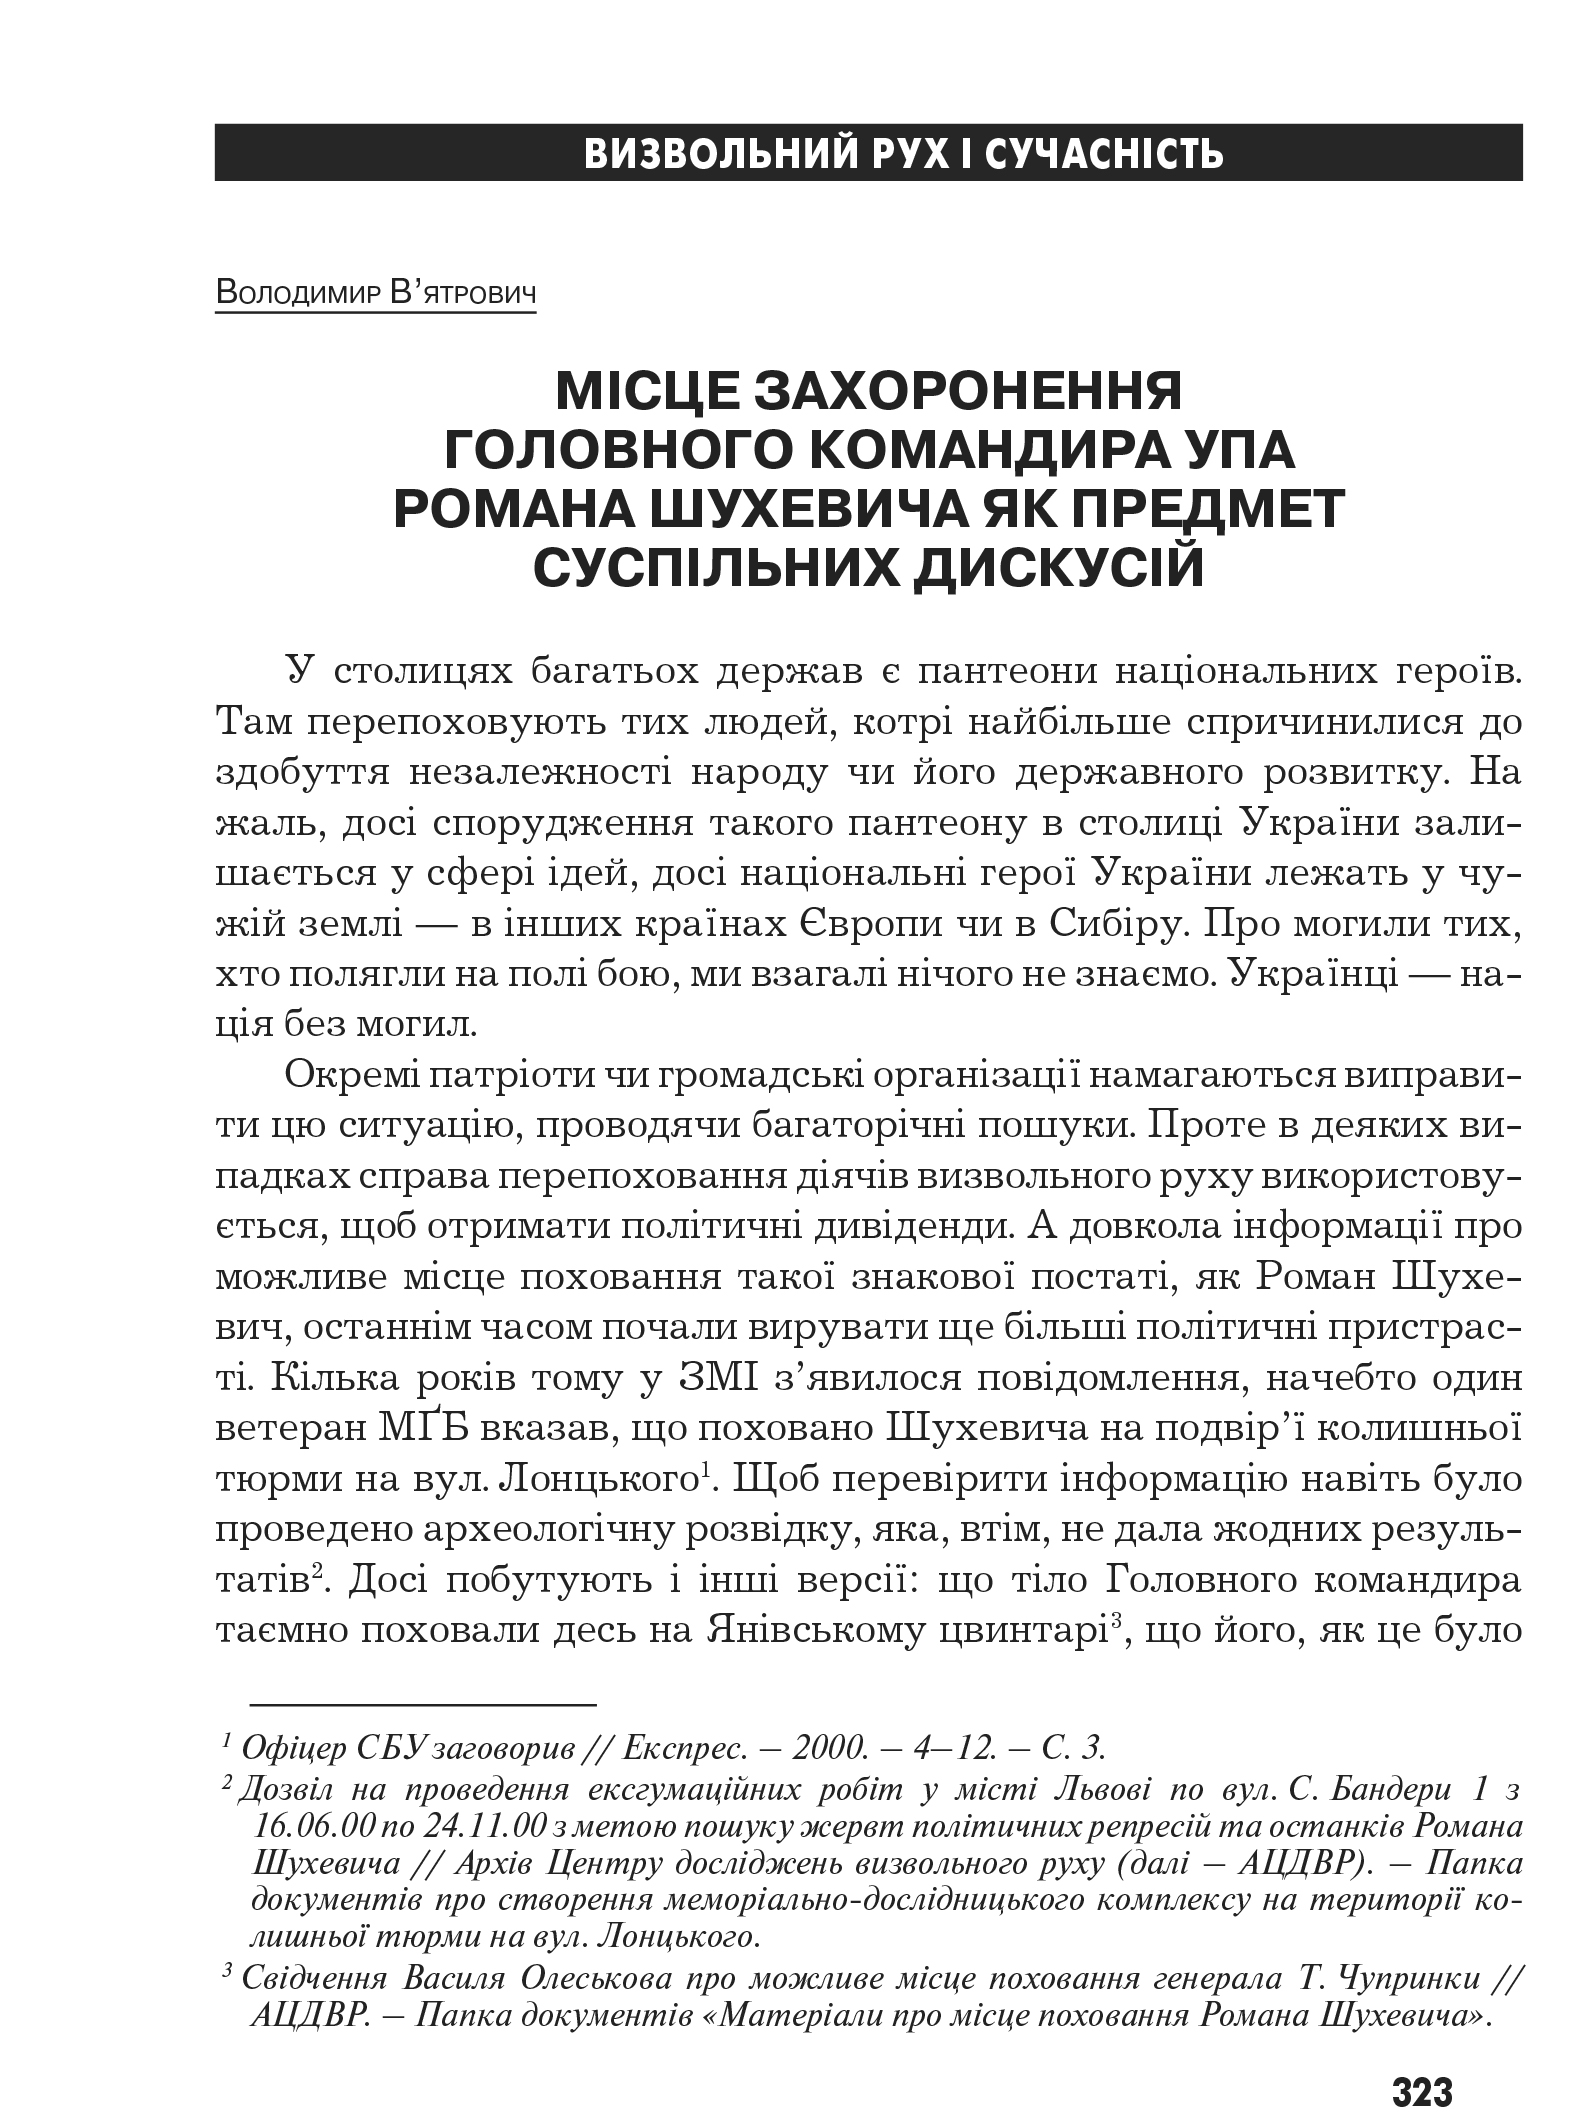 Український визвольний рух №10, ст. 323 - 336